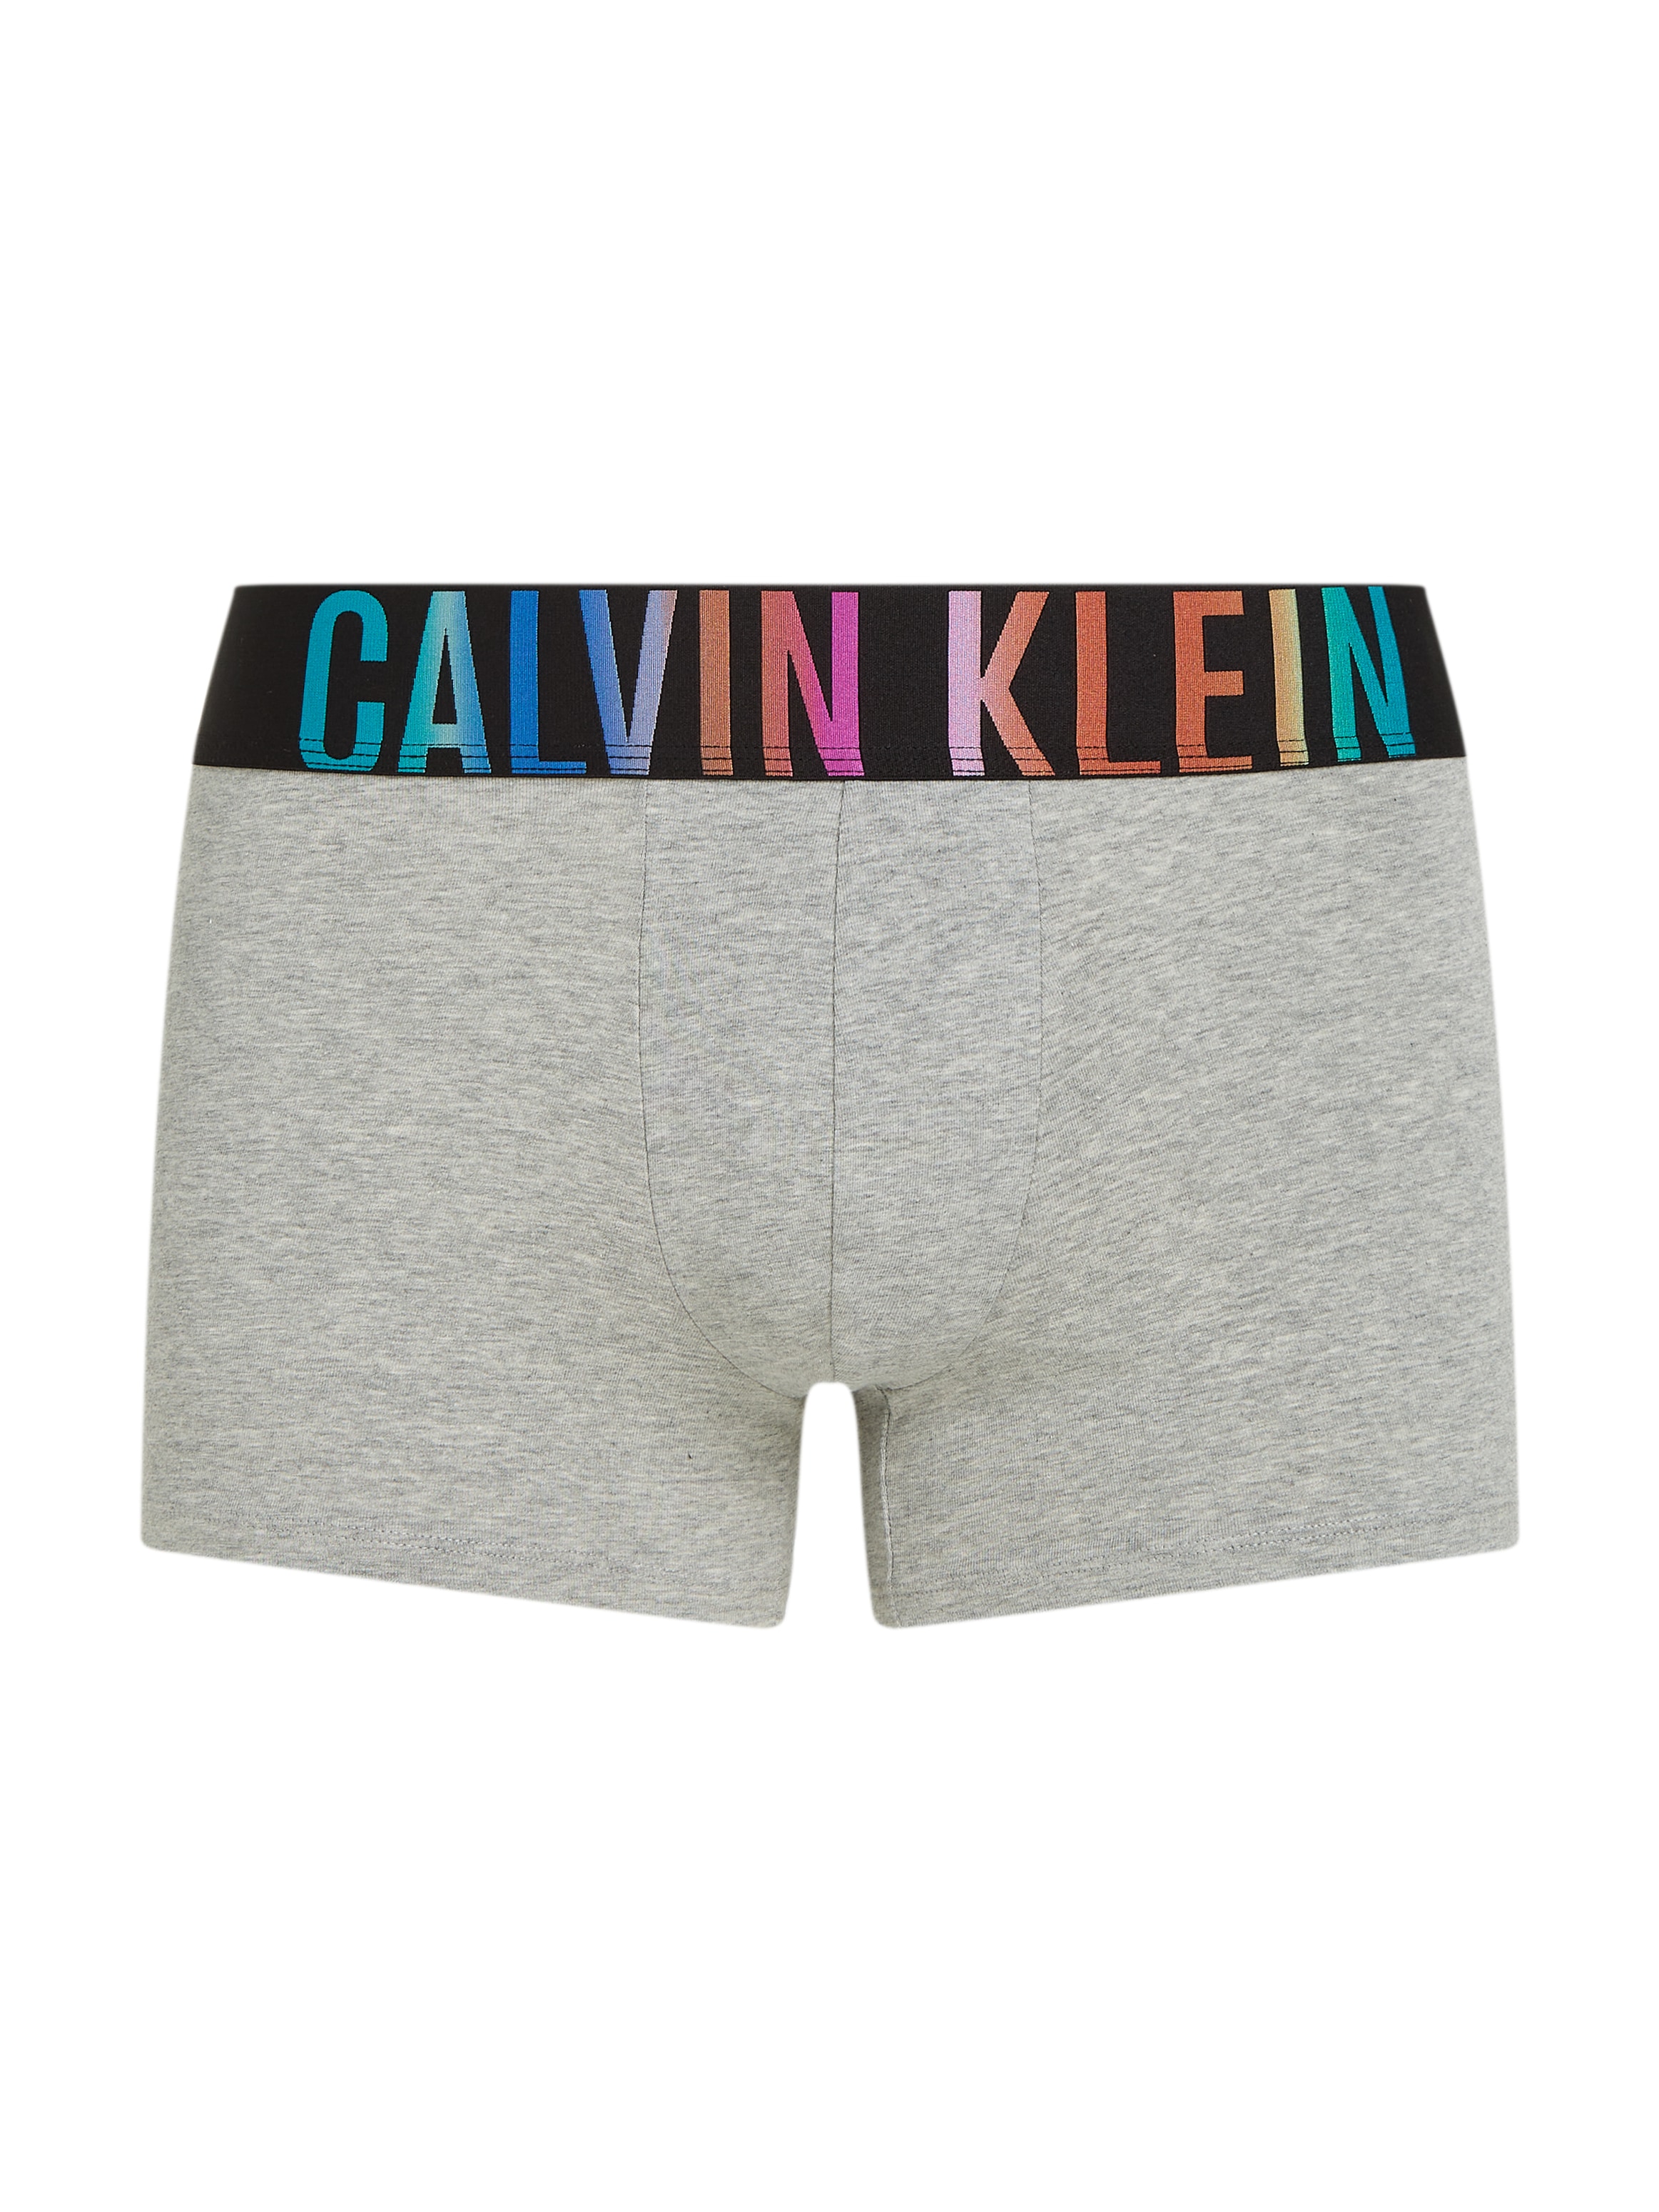 Calvin Klein Underwear Trunk "TRUNK", mit mehrfarbigem Logo